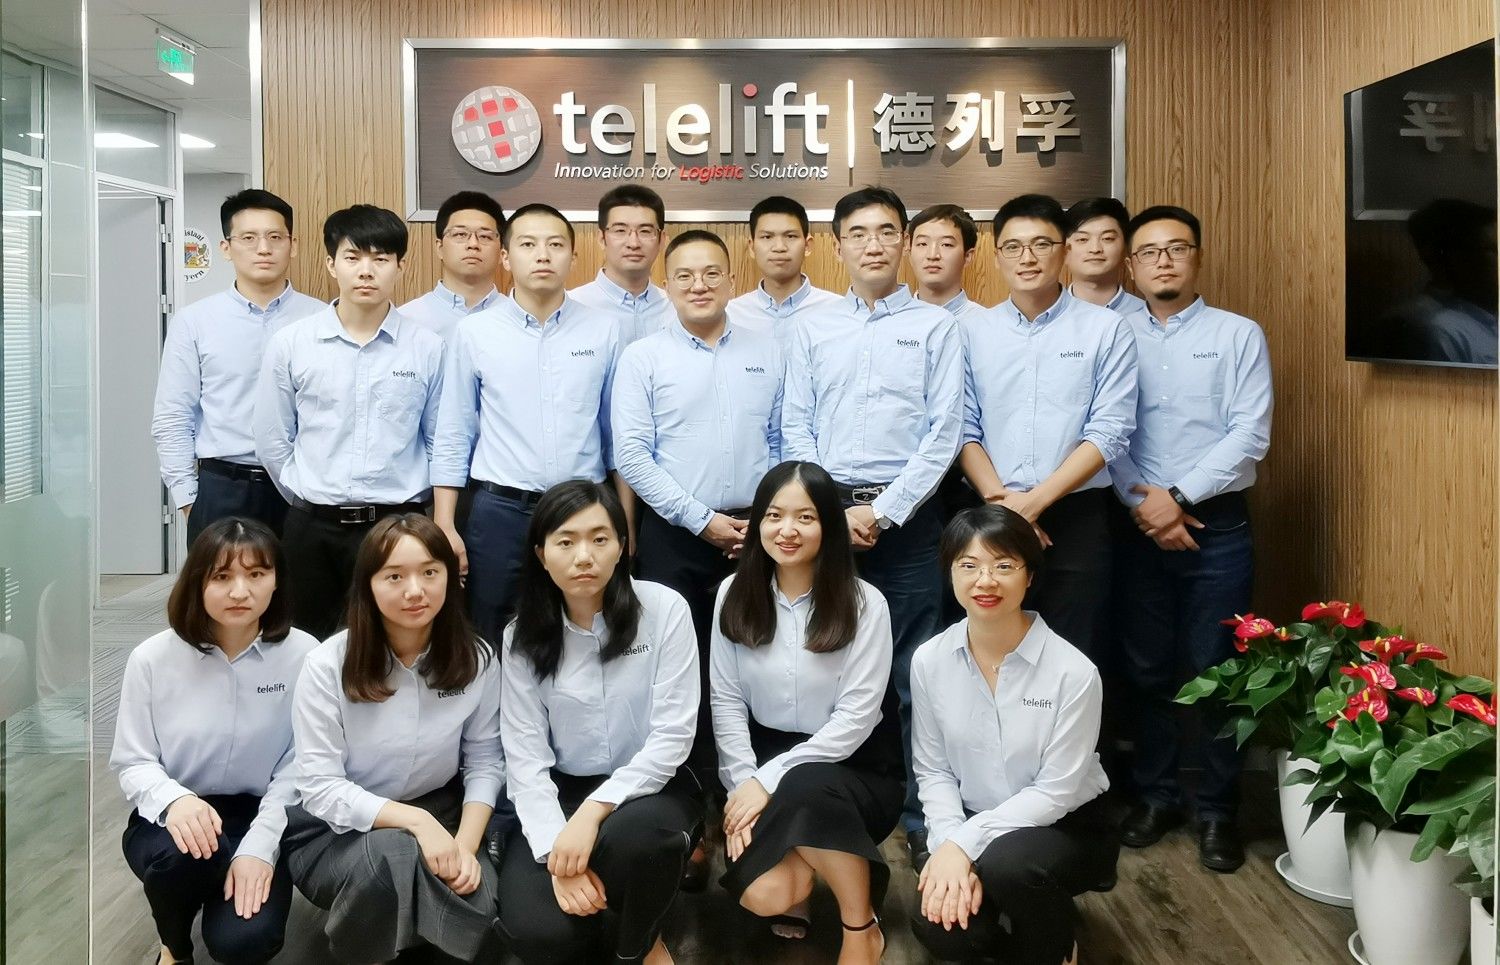 Telelift team